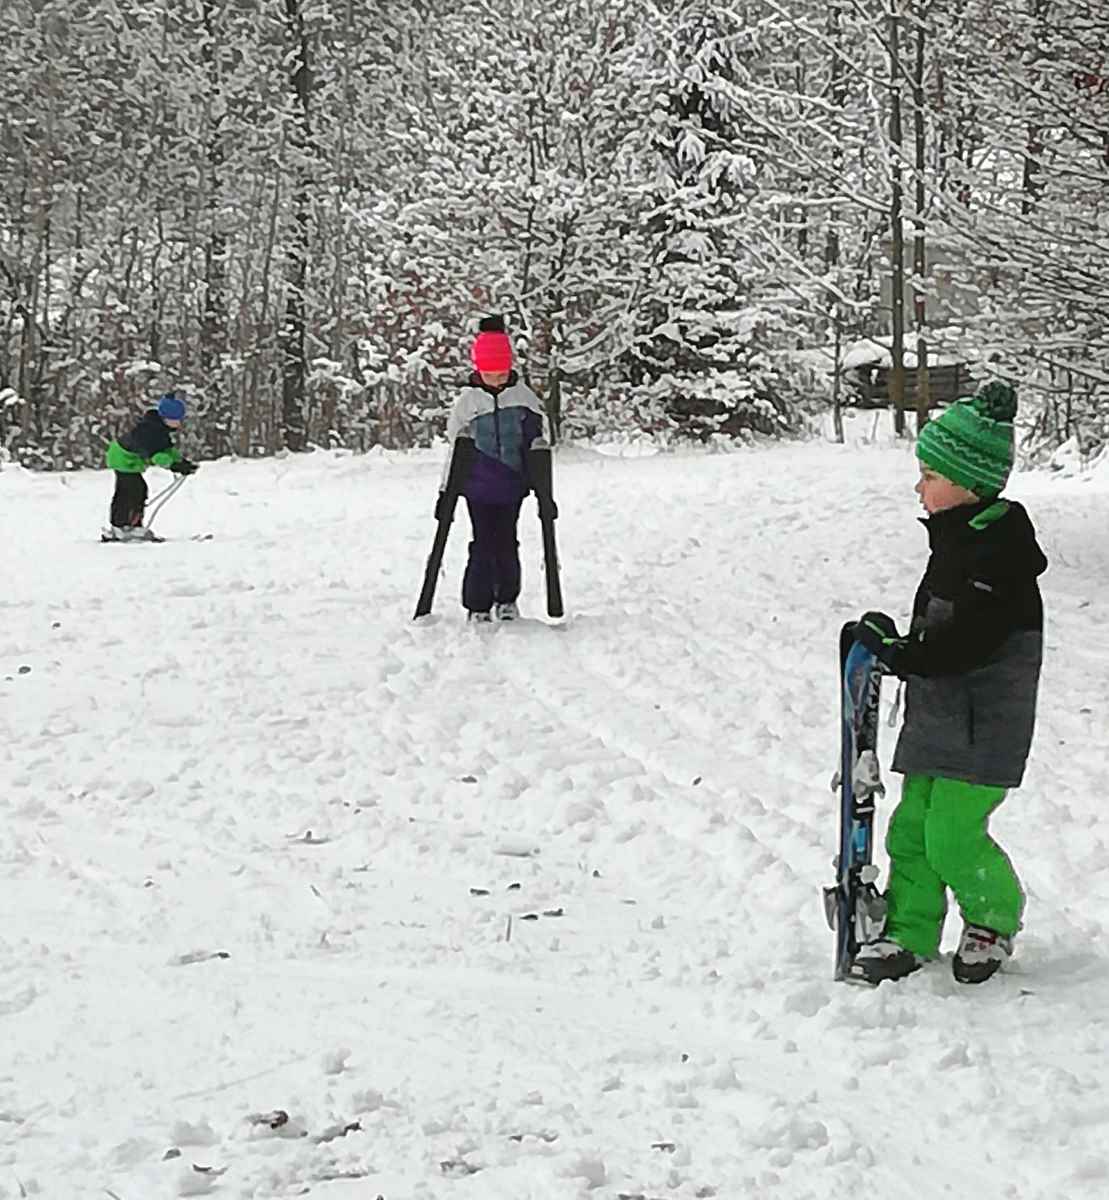 Früher gang und gäbe, heute ungewohnt: der händische Skitransport zum Startpunkt der Skipiste.